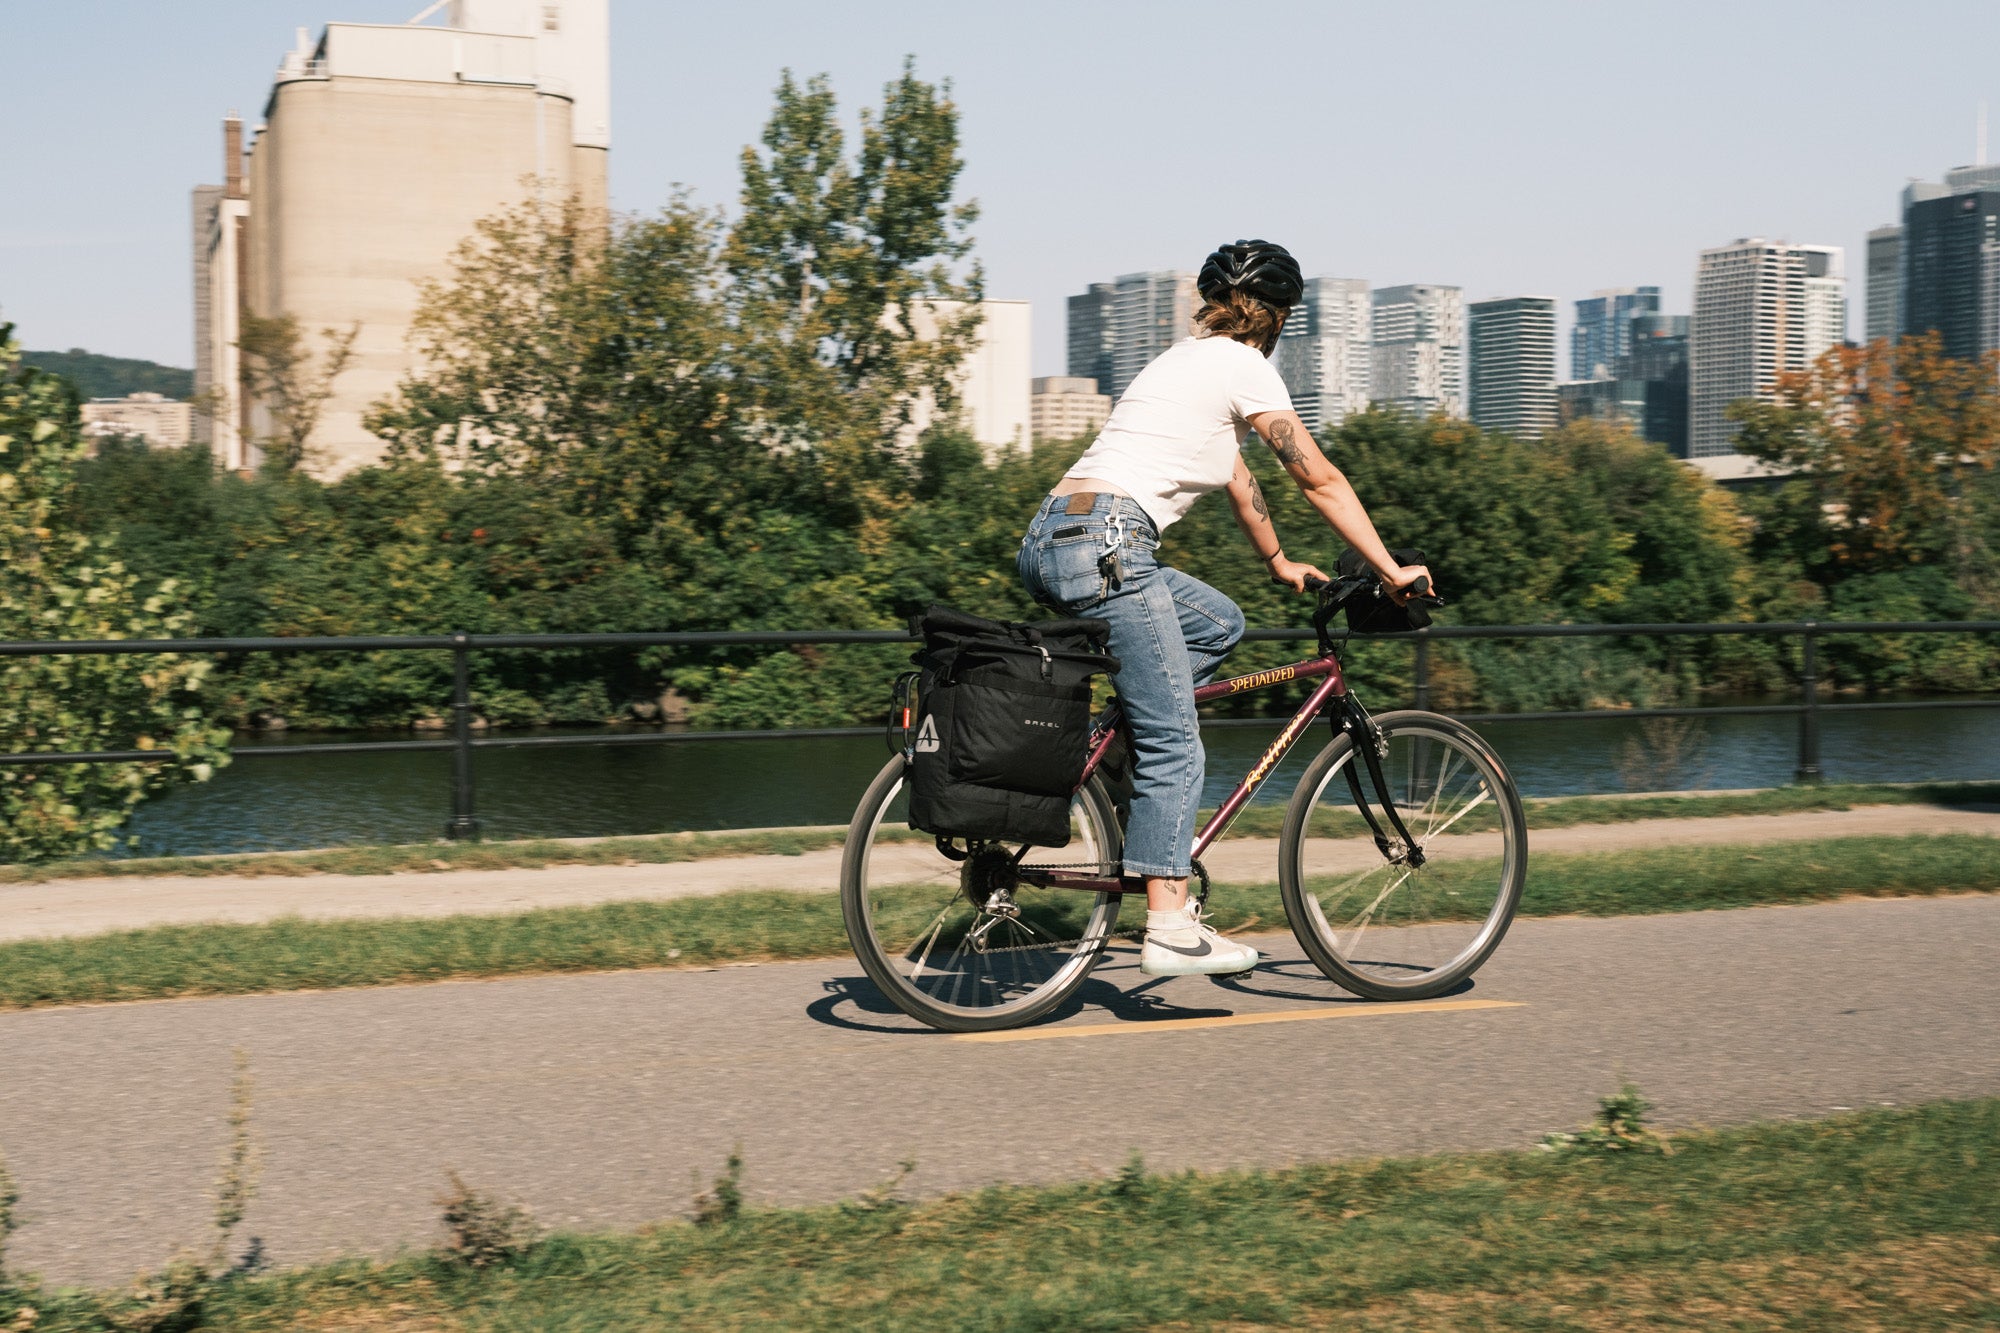 bike travel bag canada